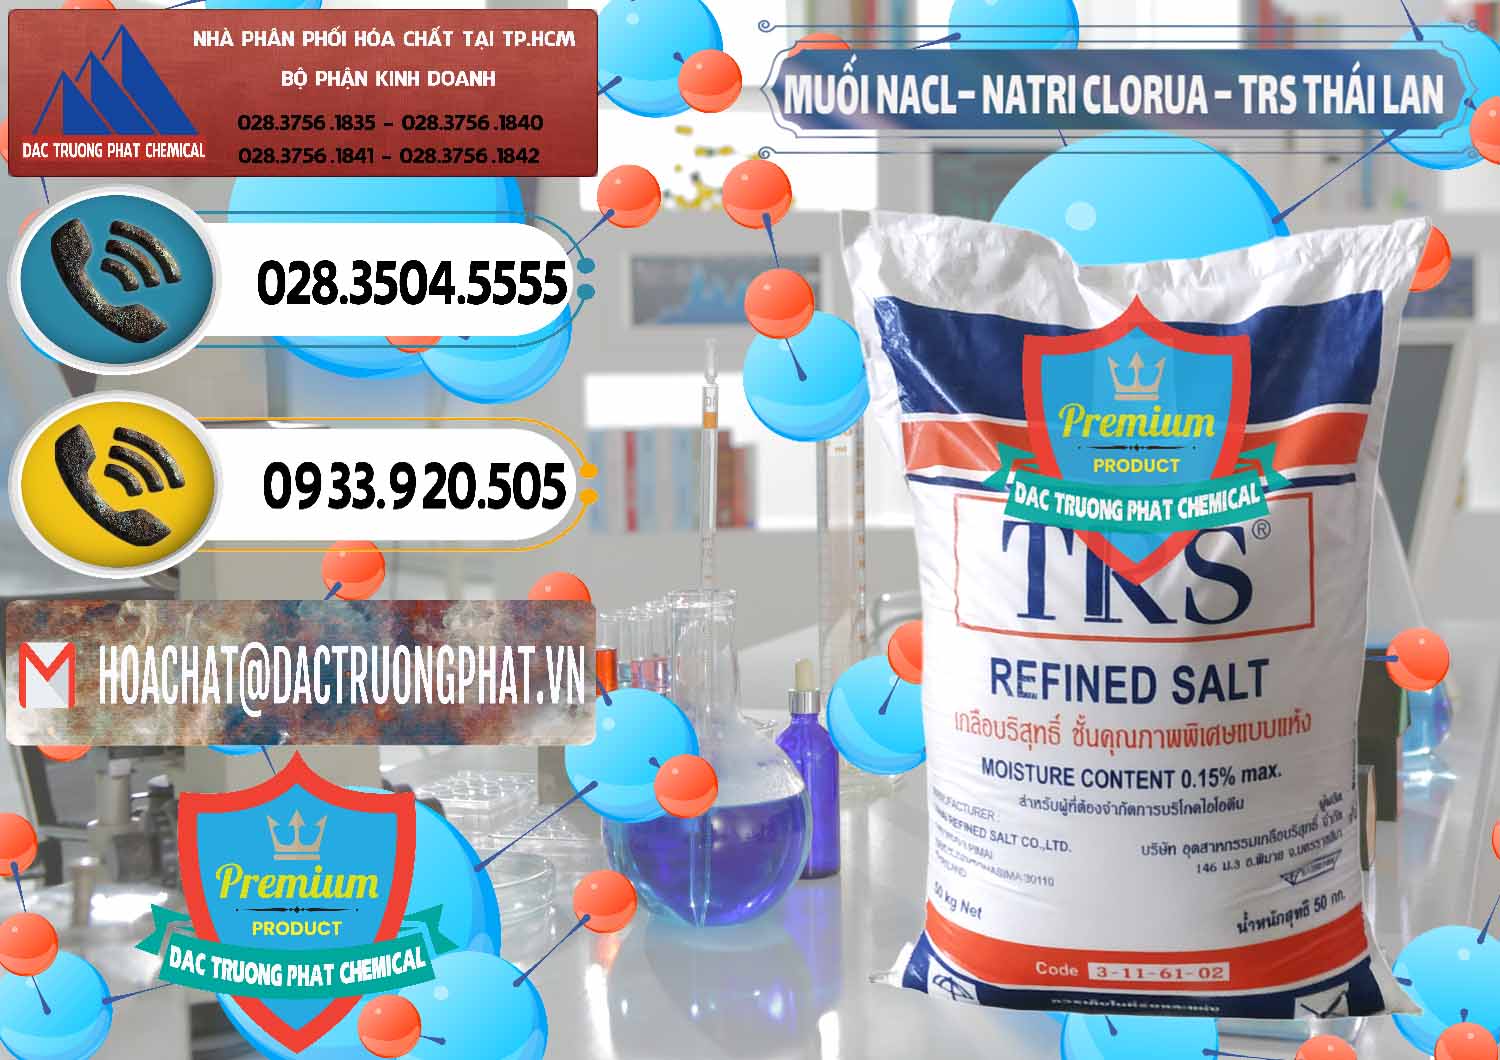 Nơi chuyên phân phối - bán Muối NaCL – Sodium Chloride TRS Thái Lan - 0096 - Cung cấp và kinh doanh hóa chất tại TP.HCM - hoachatdetnhuom.vn